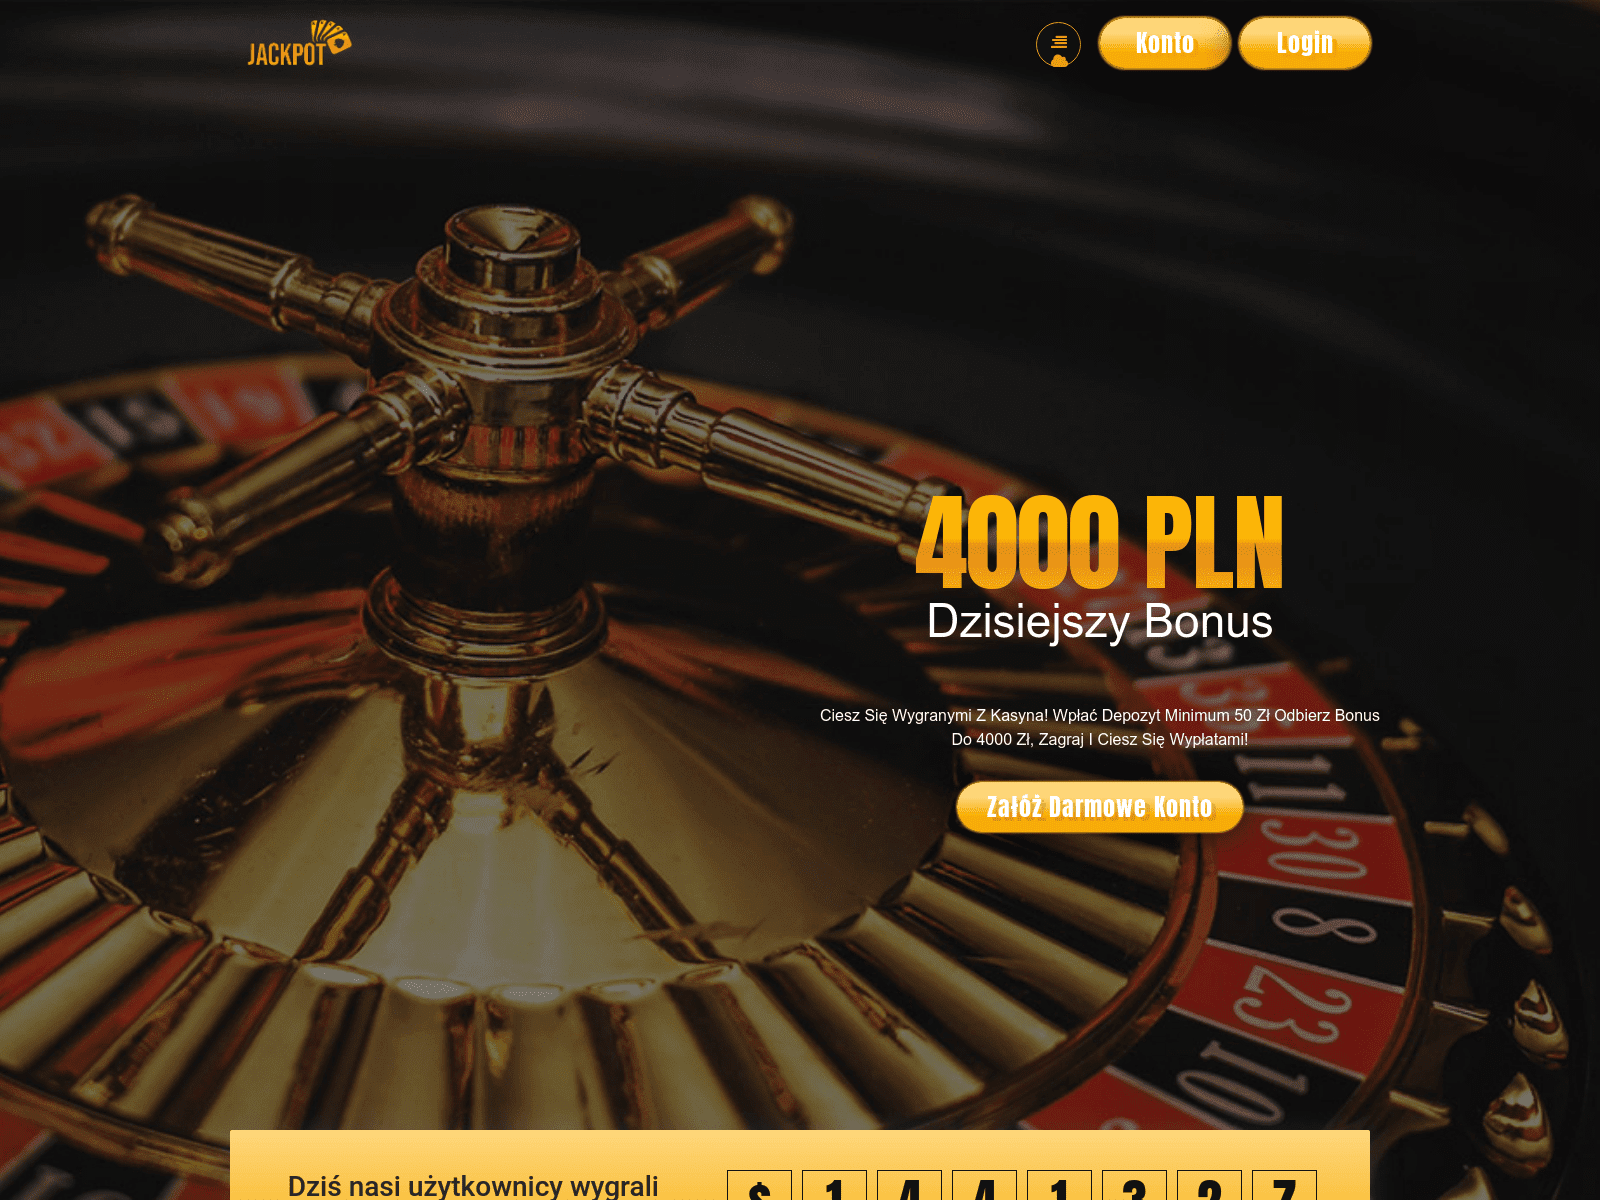 Zrzut ekranu strony, która przedstawiała się jako kasyno o nazwie Jackpot. Na stronie znalazły się informacje o bonusach dla nowych użytkowników.